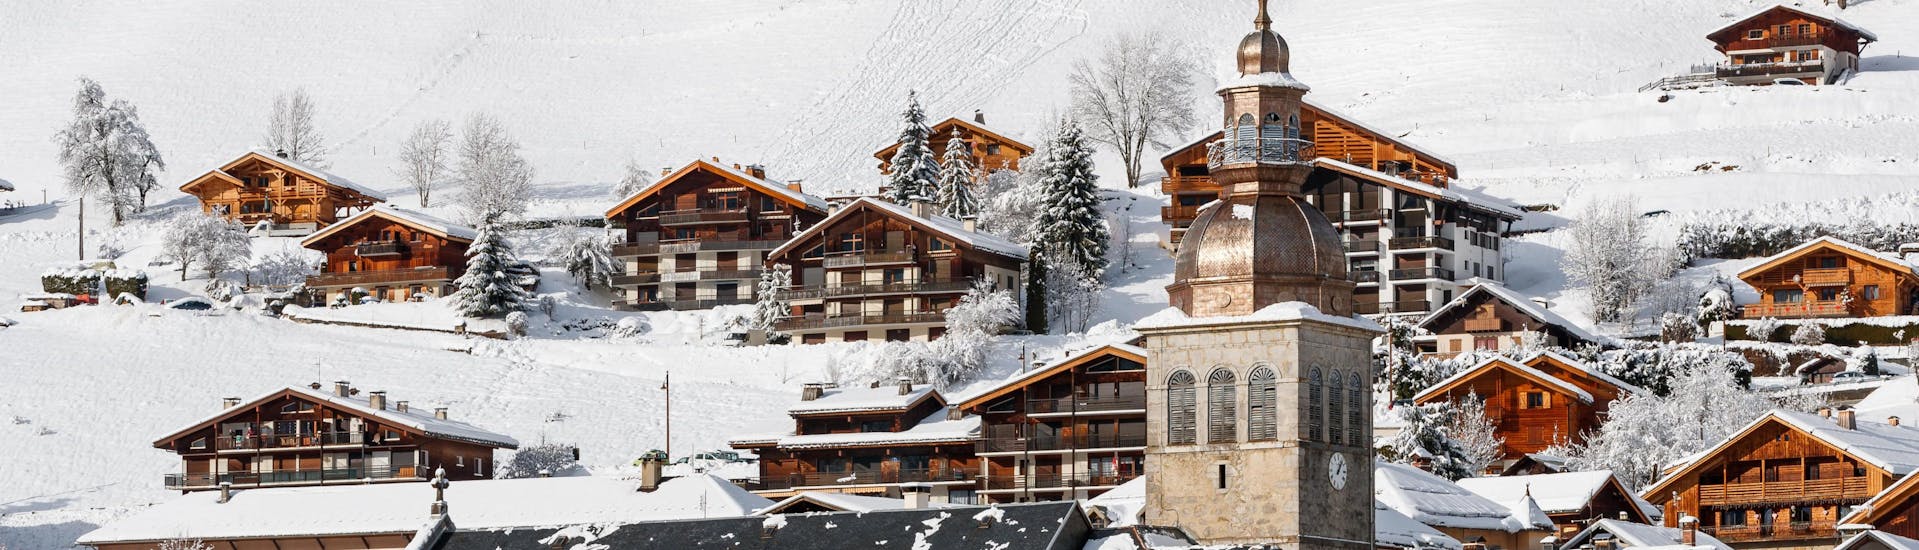 Vue de la ville de la station de ski française du Grand Bornand avec son église et ses chalets en bois où les écoles de ski locales offrent un large éventail de cours de ski pour ceux qui veulent apprendre à skier.